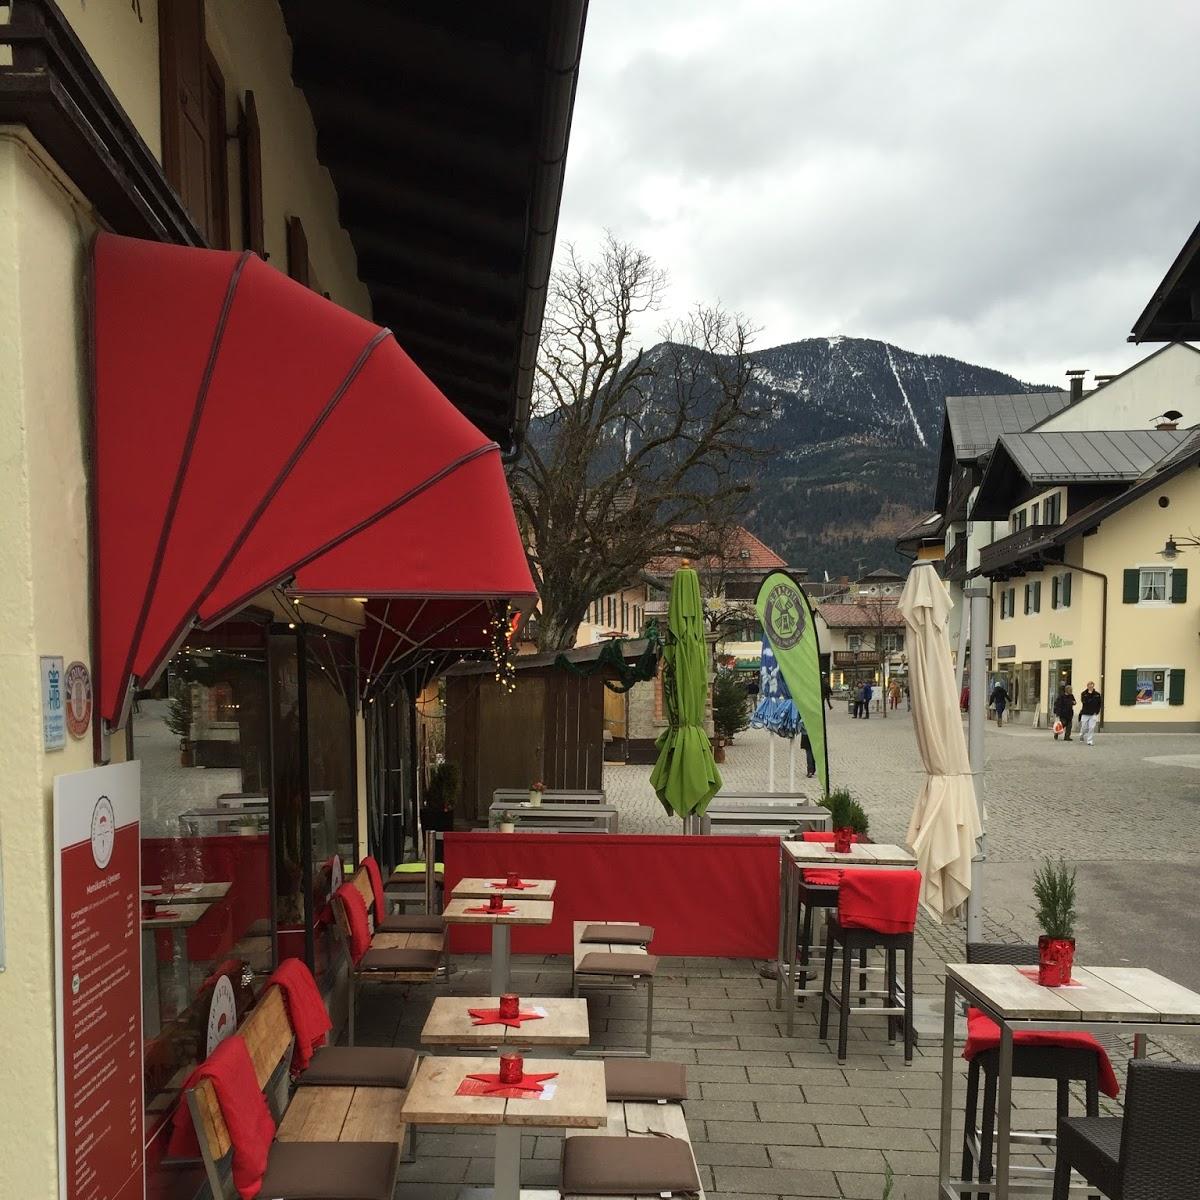 Restaurant "Bistro-Extrawurst" in Garmisch-Partenkirchen